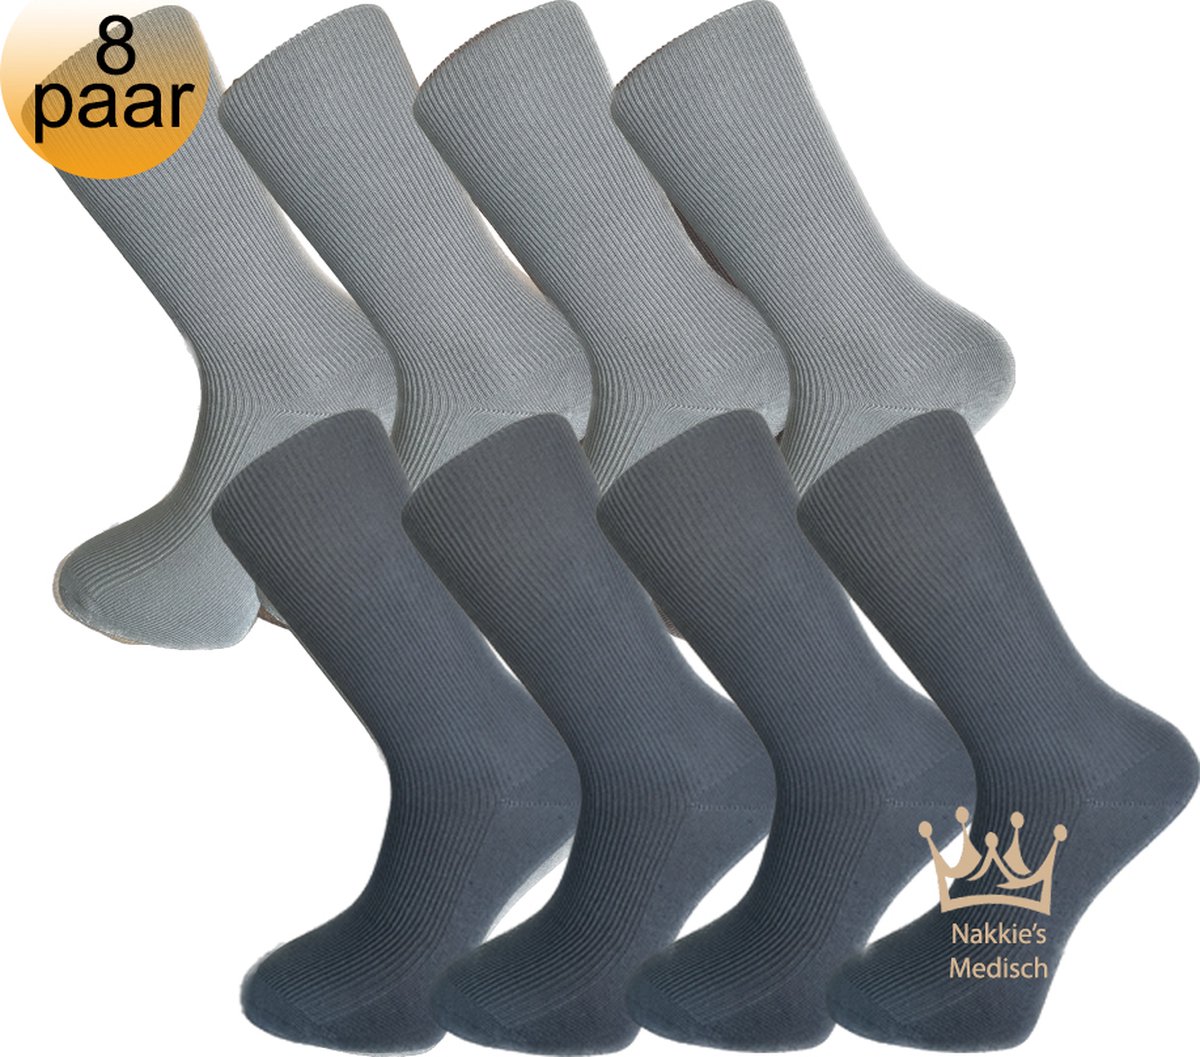 Medische sokken - 100% katoen - 8 paar - Maat 43/46 - Grijs en Antraciet